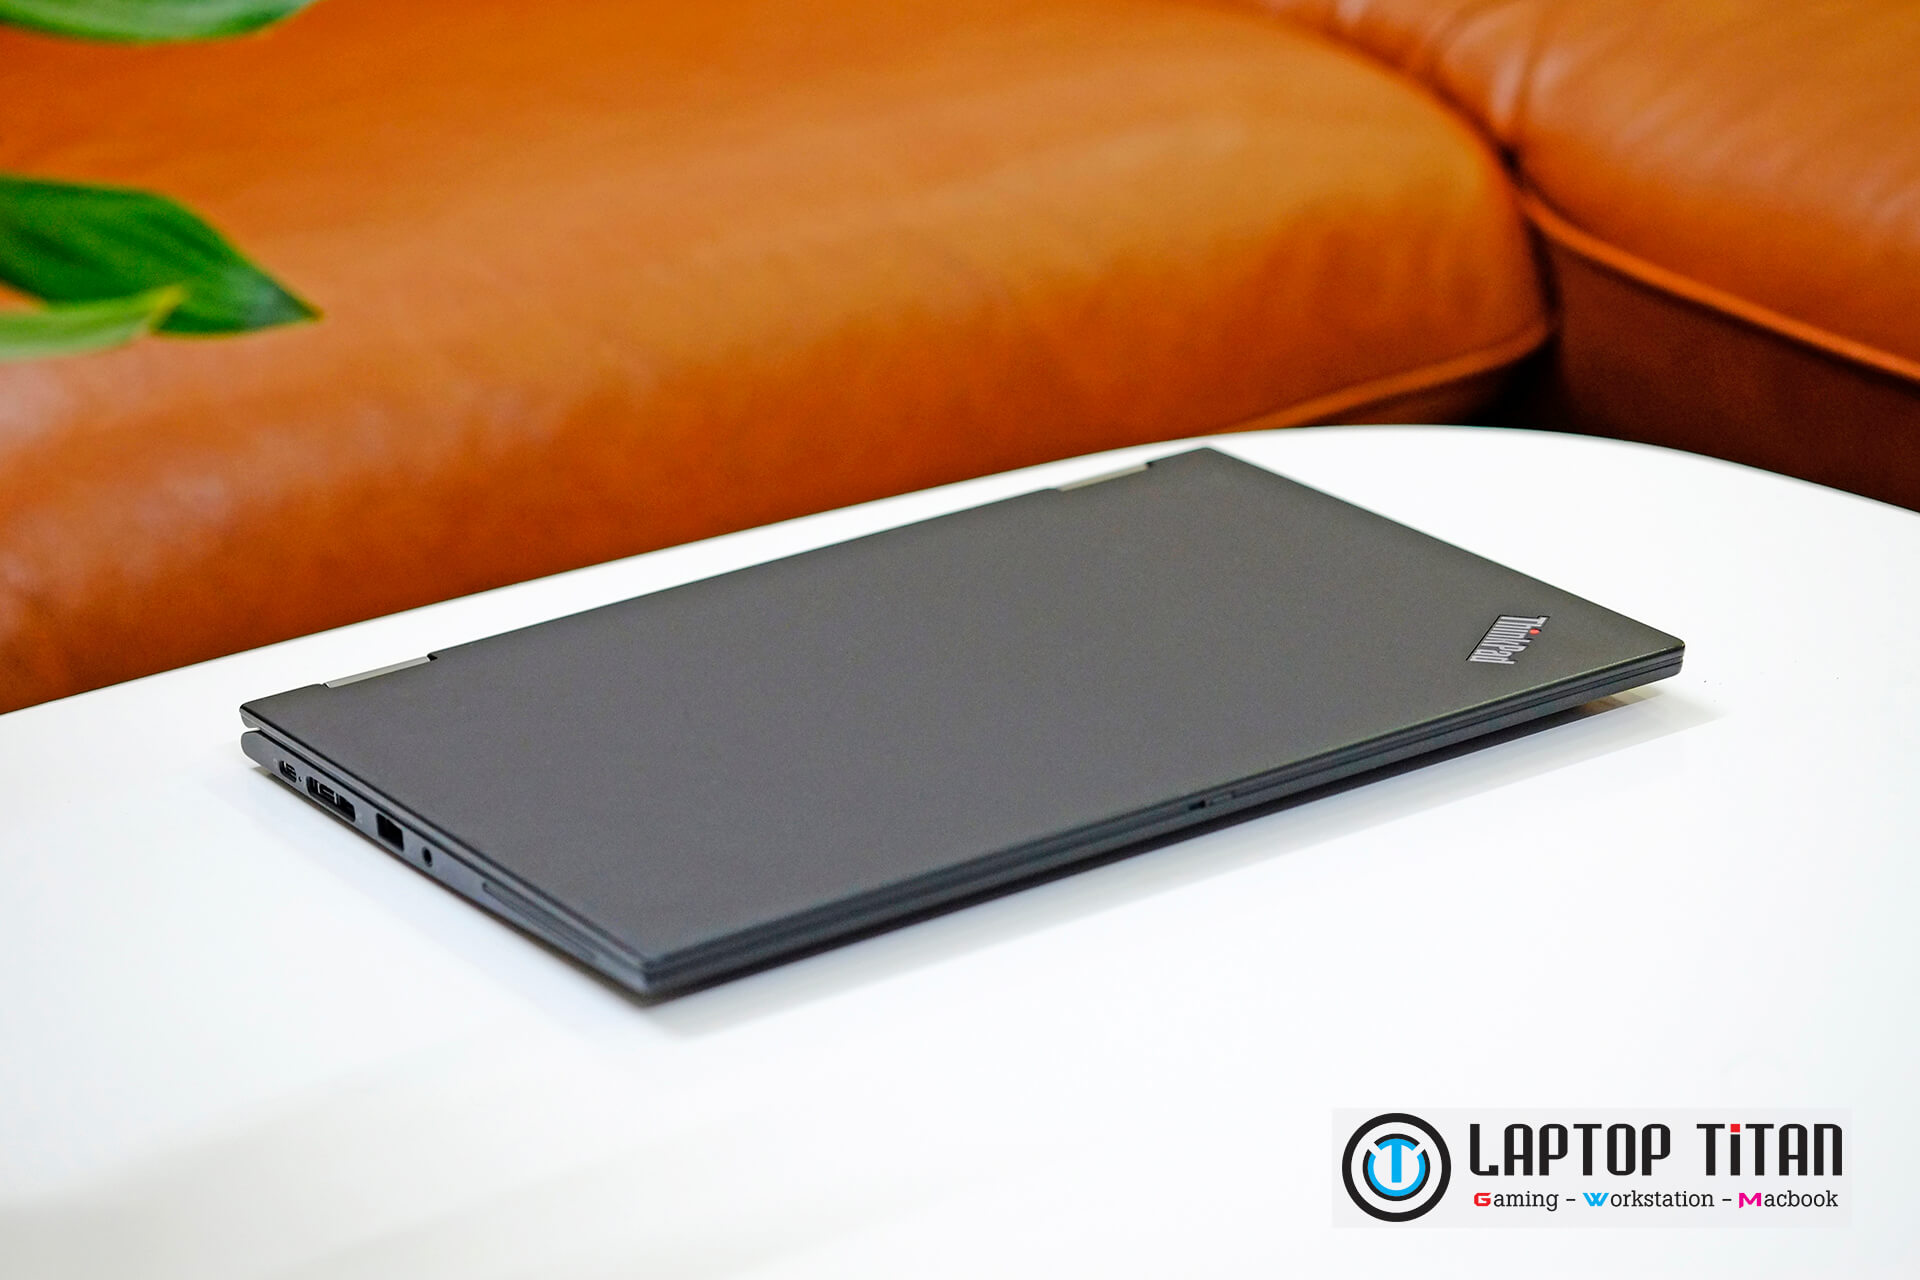 Lenovo Thinkpad X13 Yoga Laptoptitan 01